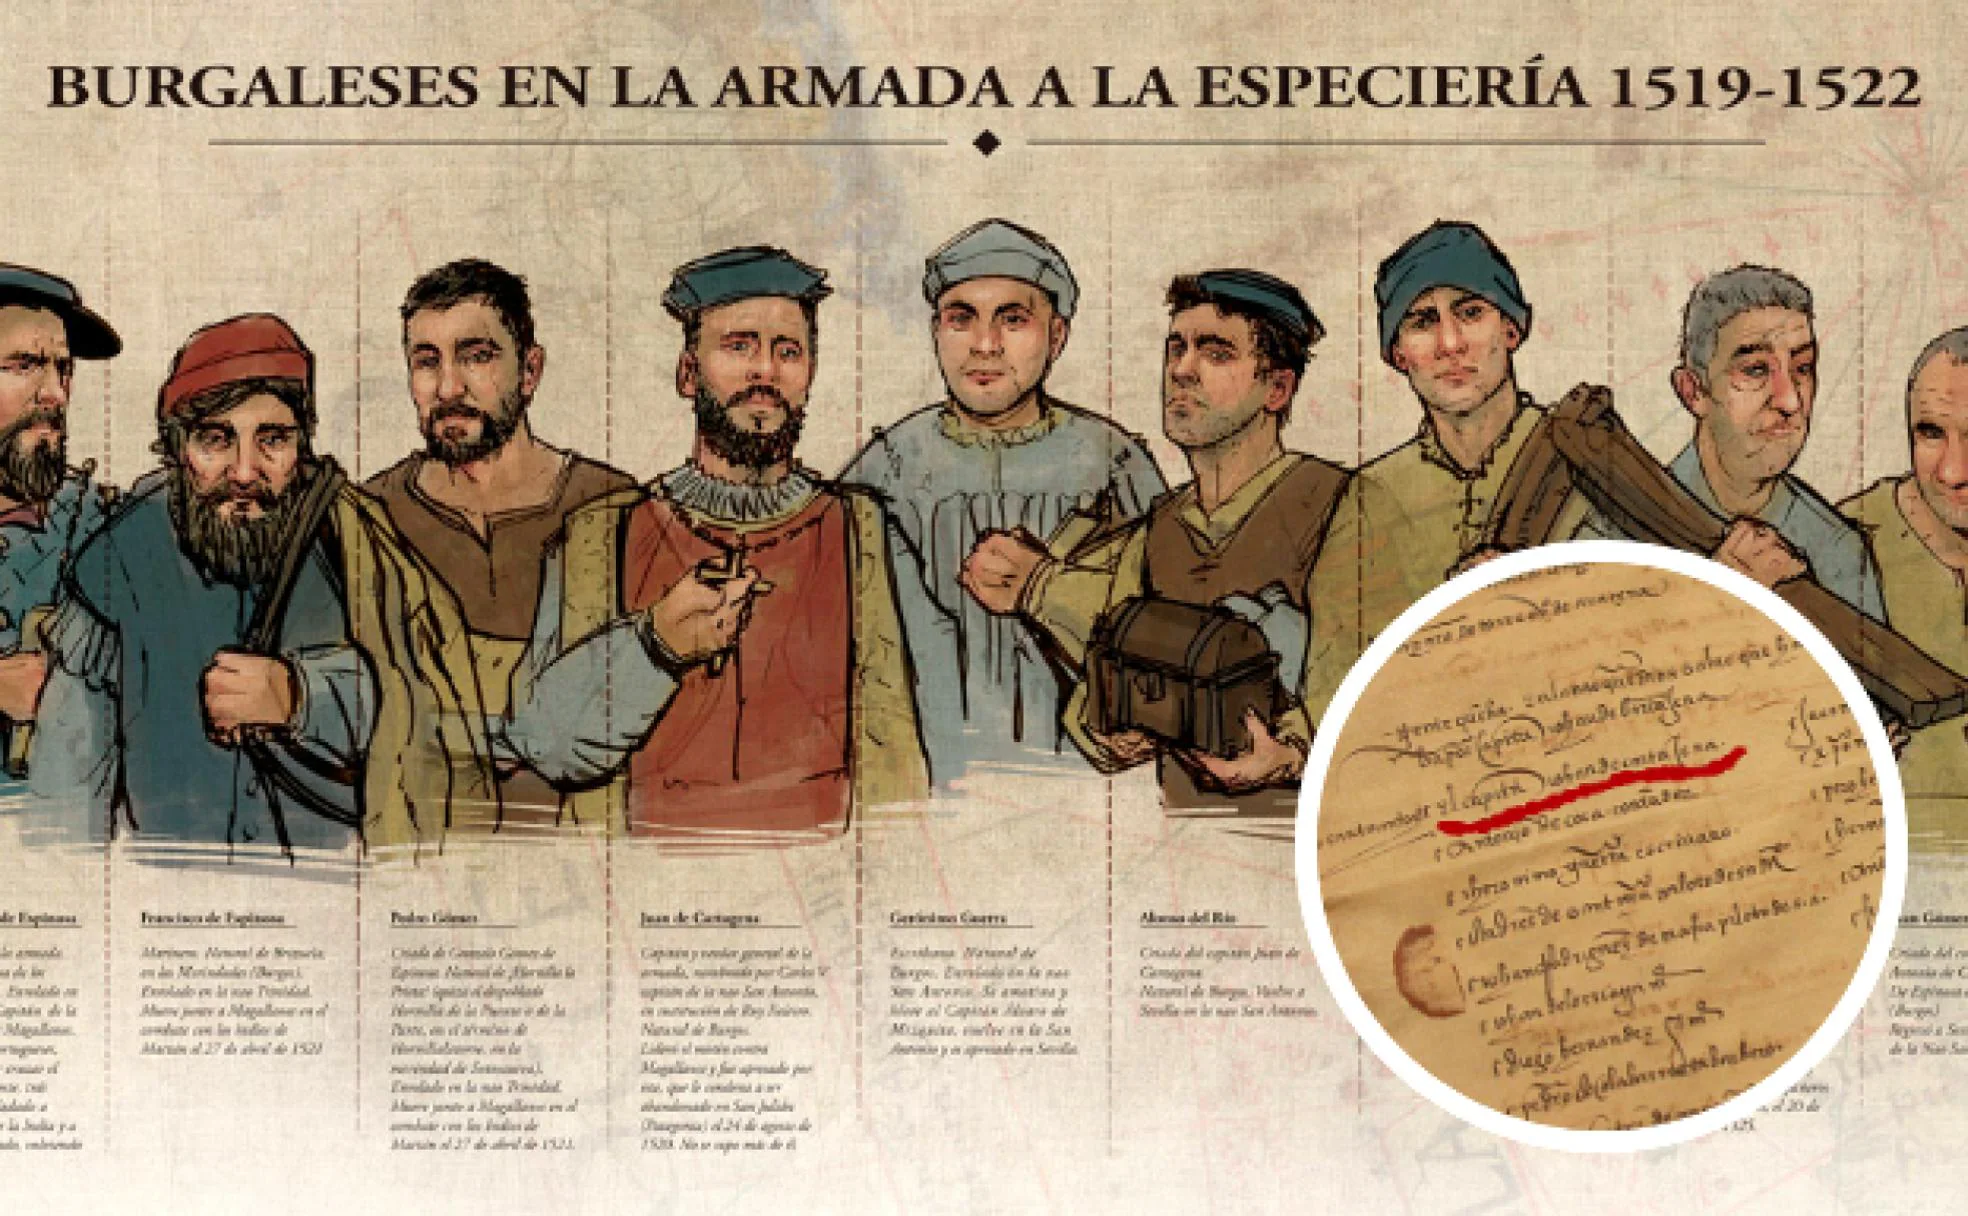 Texto de la época que atribuye el cargo de capitán al burgalés Juan de Cartagena